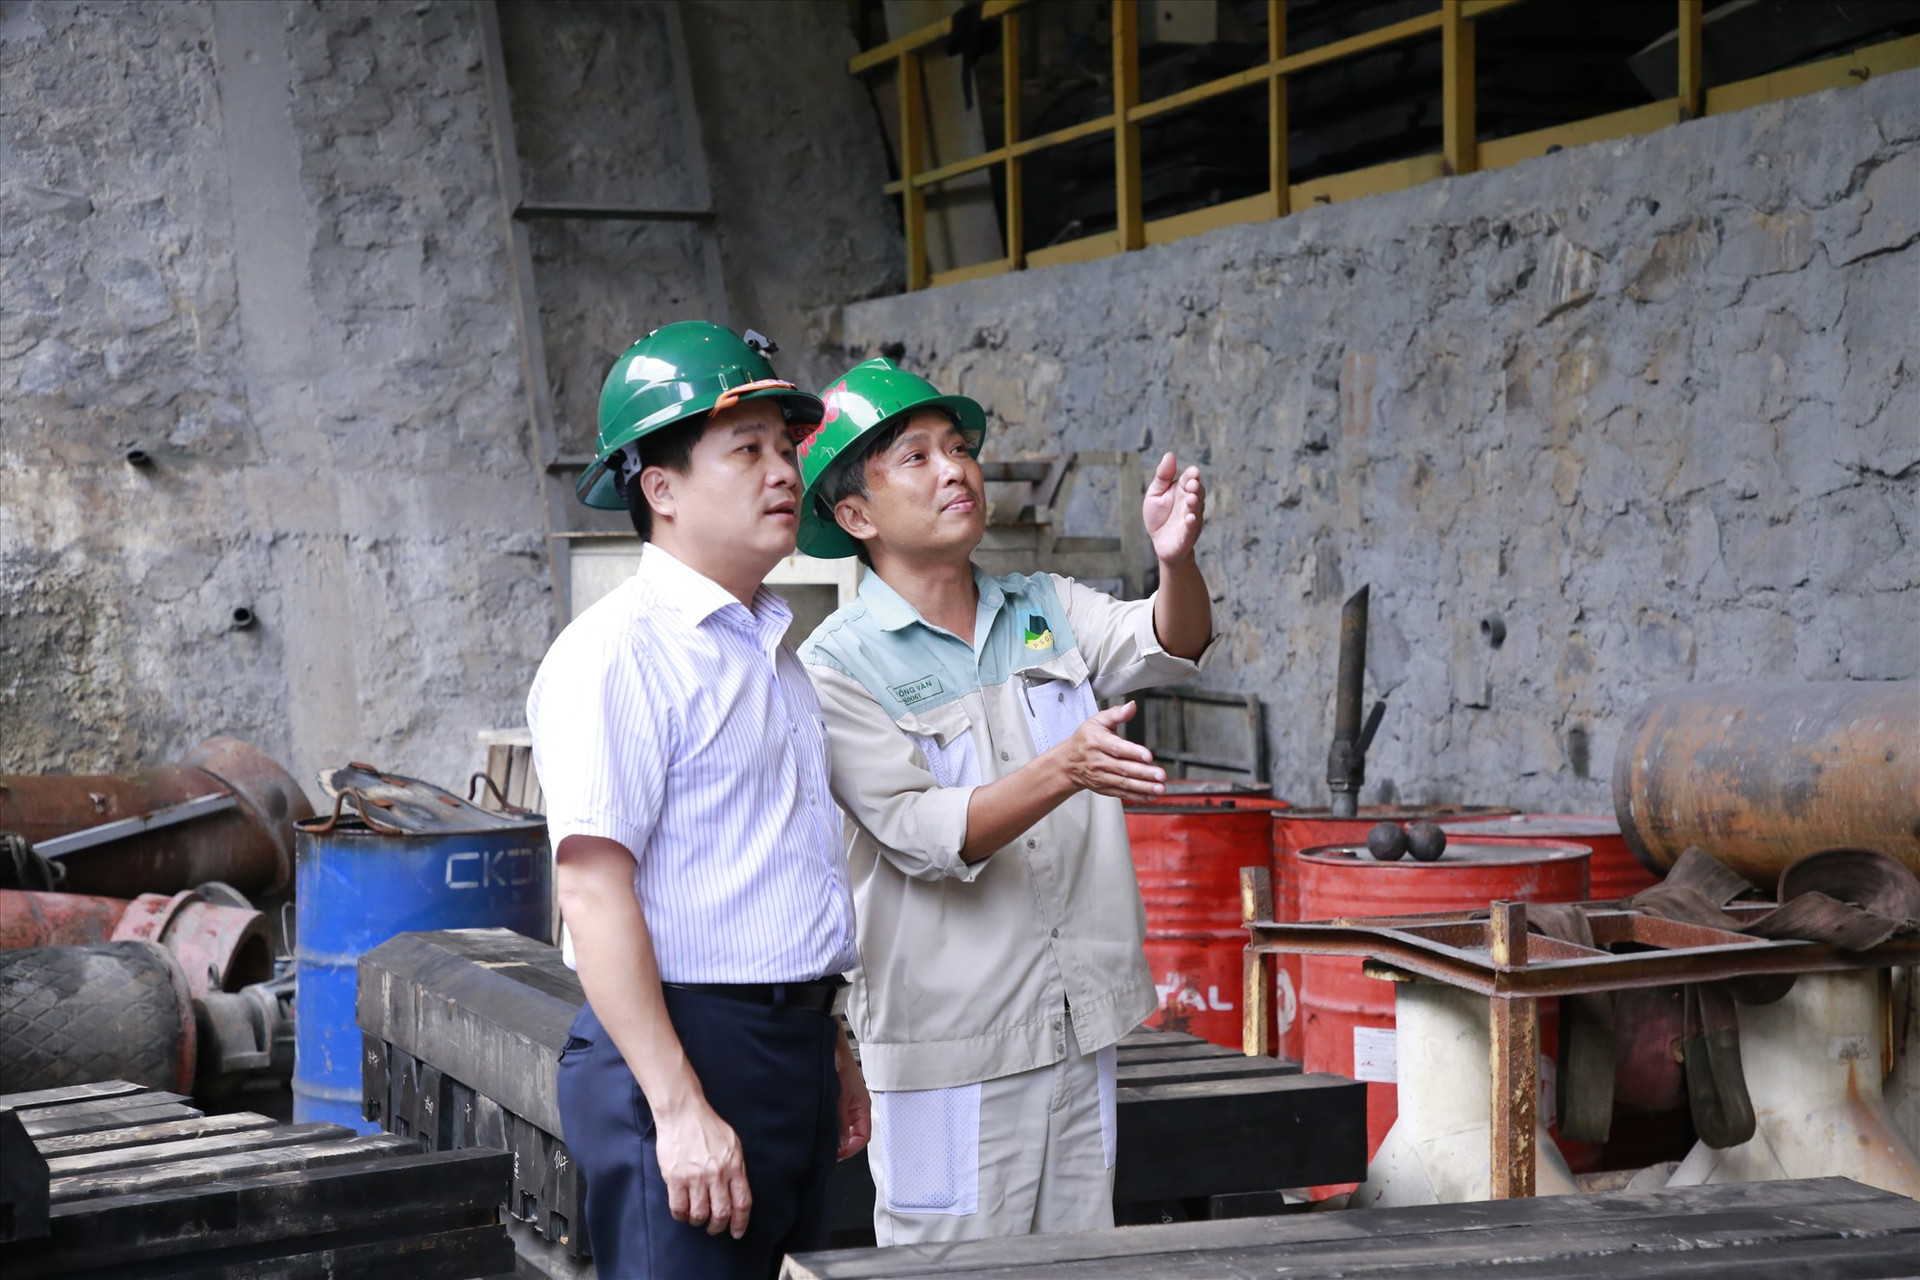 Đồng chí Trần Văn Tân kiểm tra tình hình hoạt động của nhà máy. Ảnh: T.C